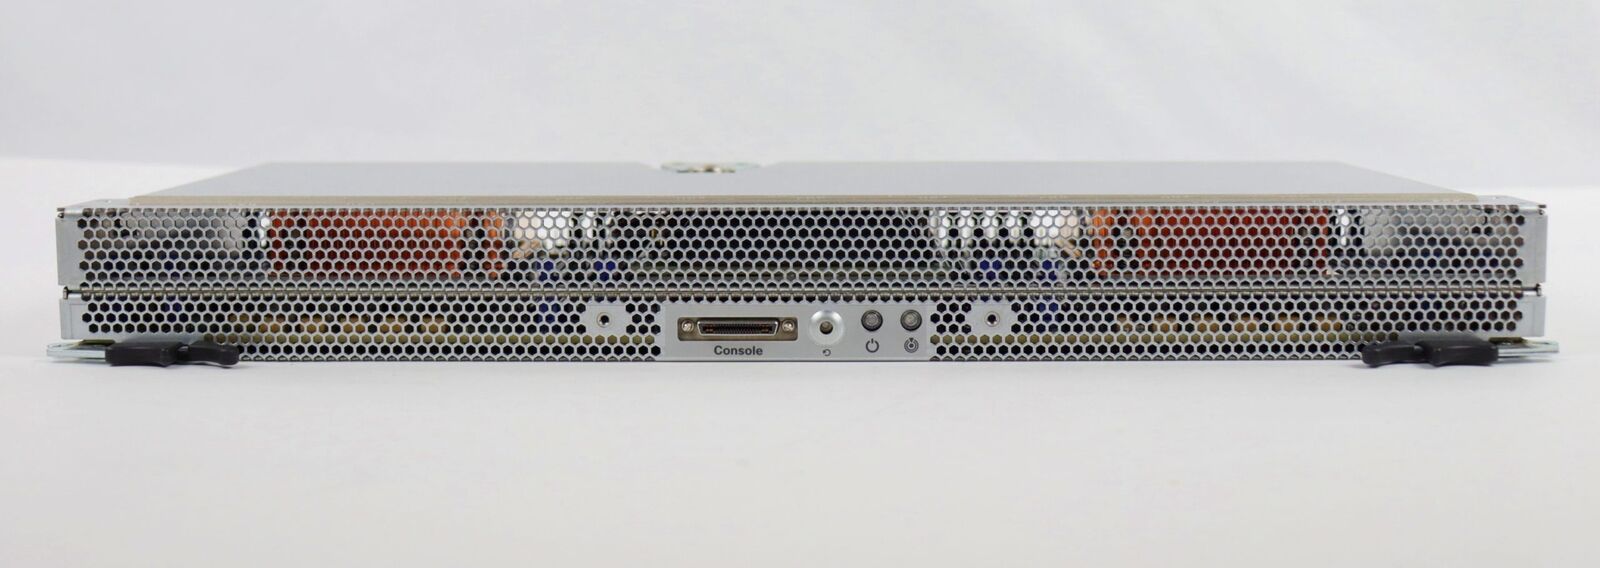 Cisco UCSC-C3X60-SVRNB Dual E5-2660v2 LGA2011 DDR4 Server Node for UCS C3160